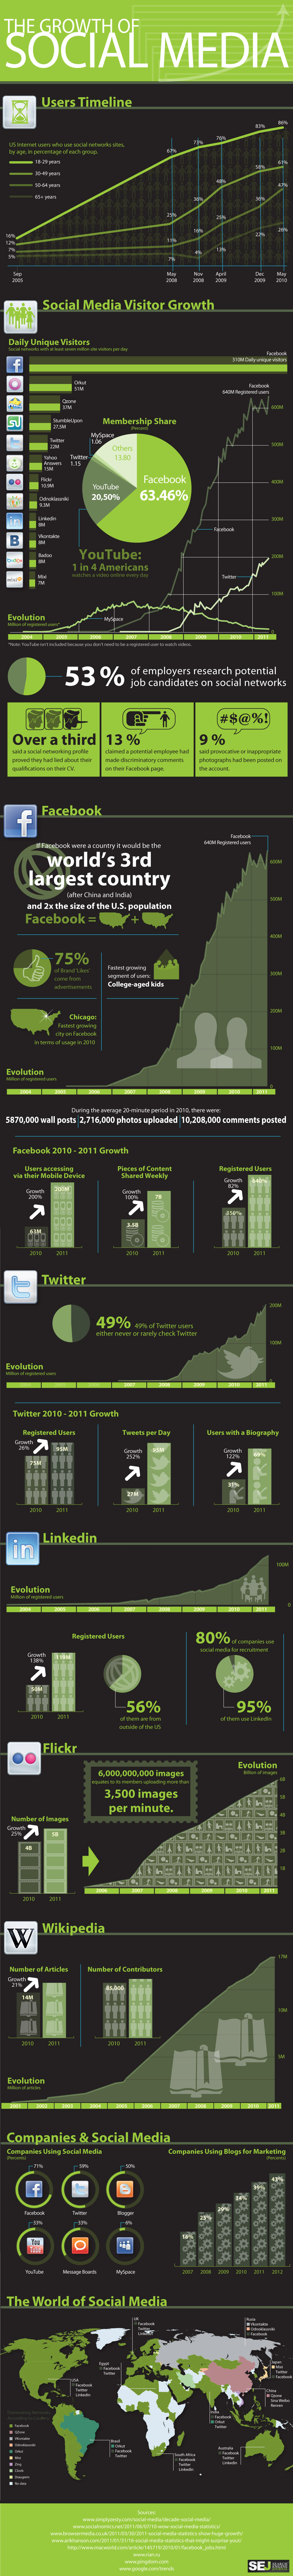 Crecimiento de los social media Infografia. Post de Esmeralda Diaz-Aroca